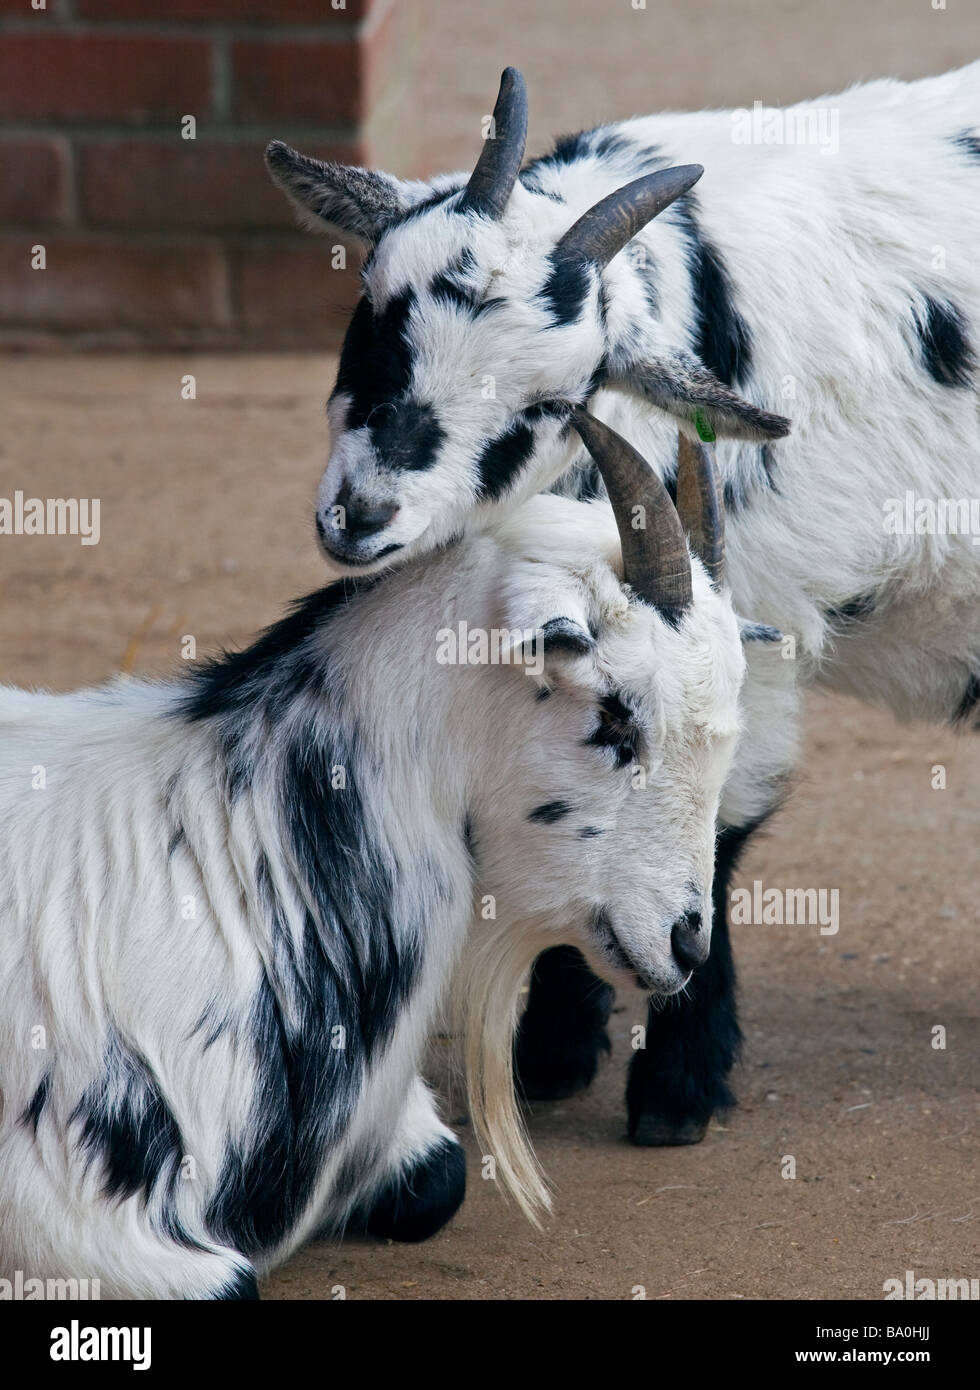 Two Pygmy Goats nuzzling, UK Stock Photo